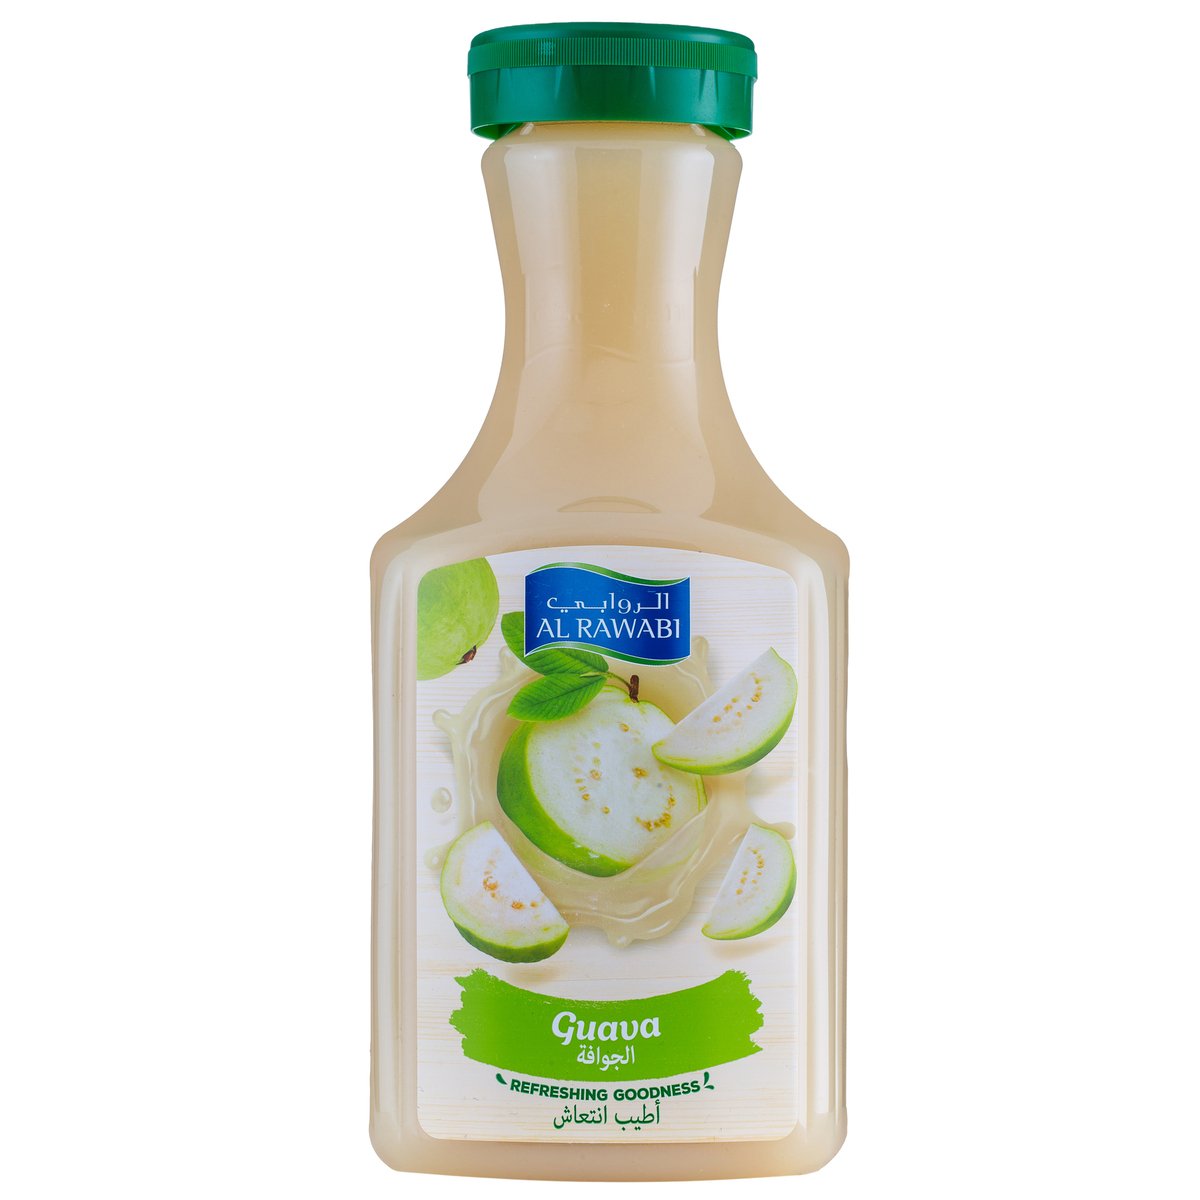 Buy Al Rawabi Guava Juice No Added Sugar 1.5 Litres Online at Best Price | Fresh Juice Assorted | Lulu UAE in UAE